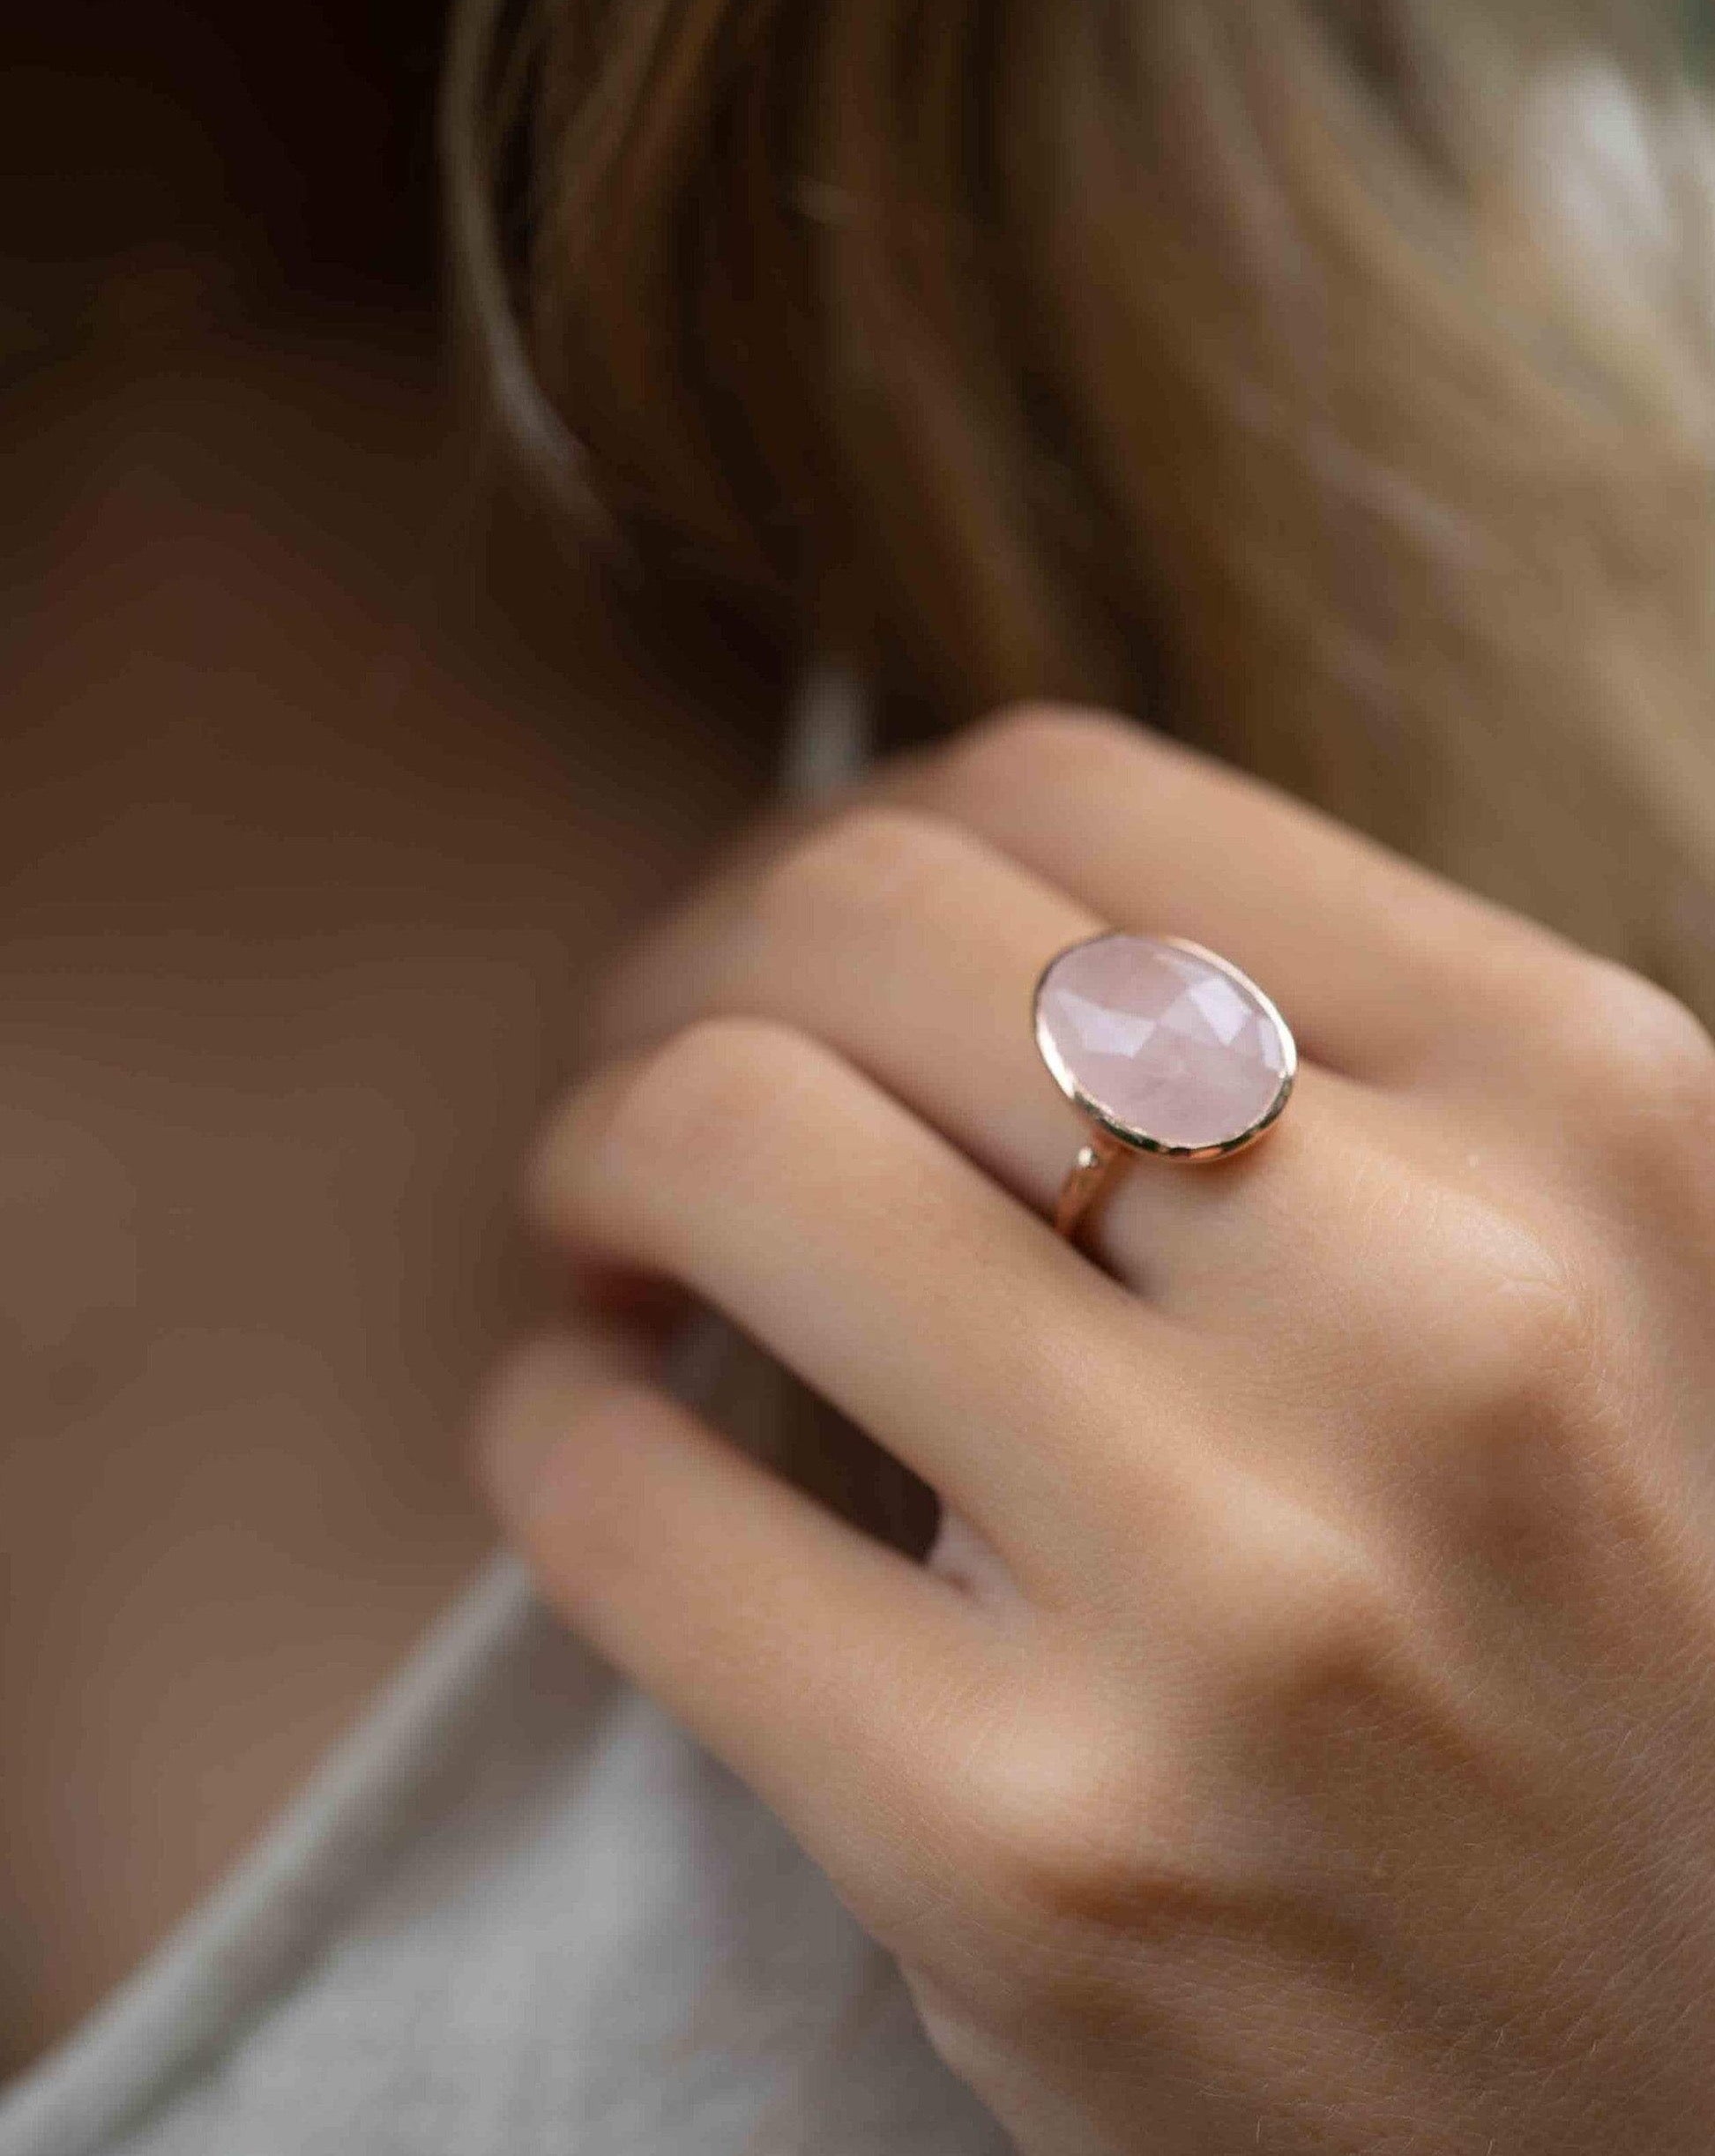 Red Gemstone Ring | Rebekajewelry